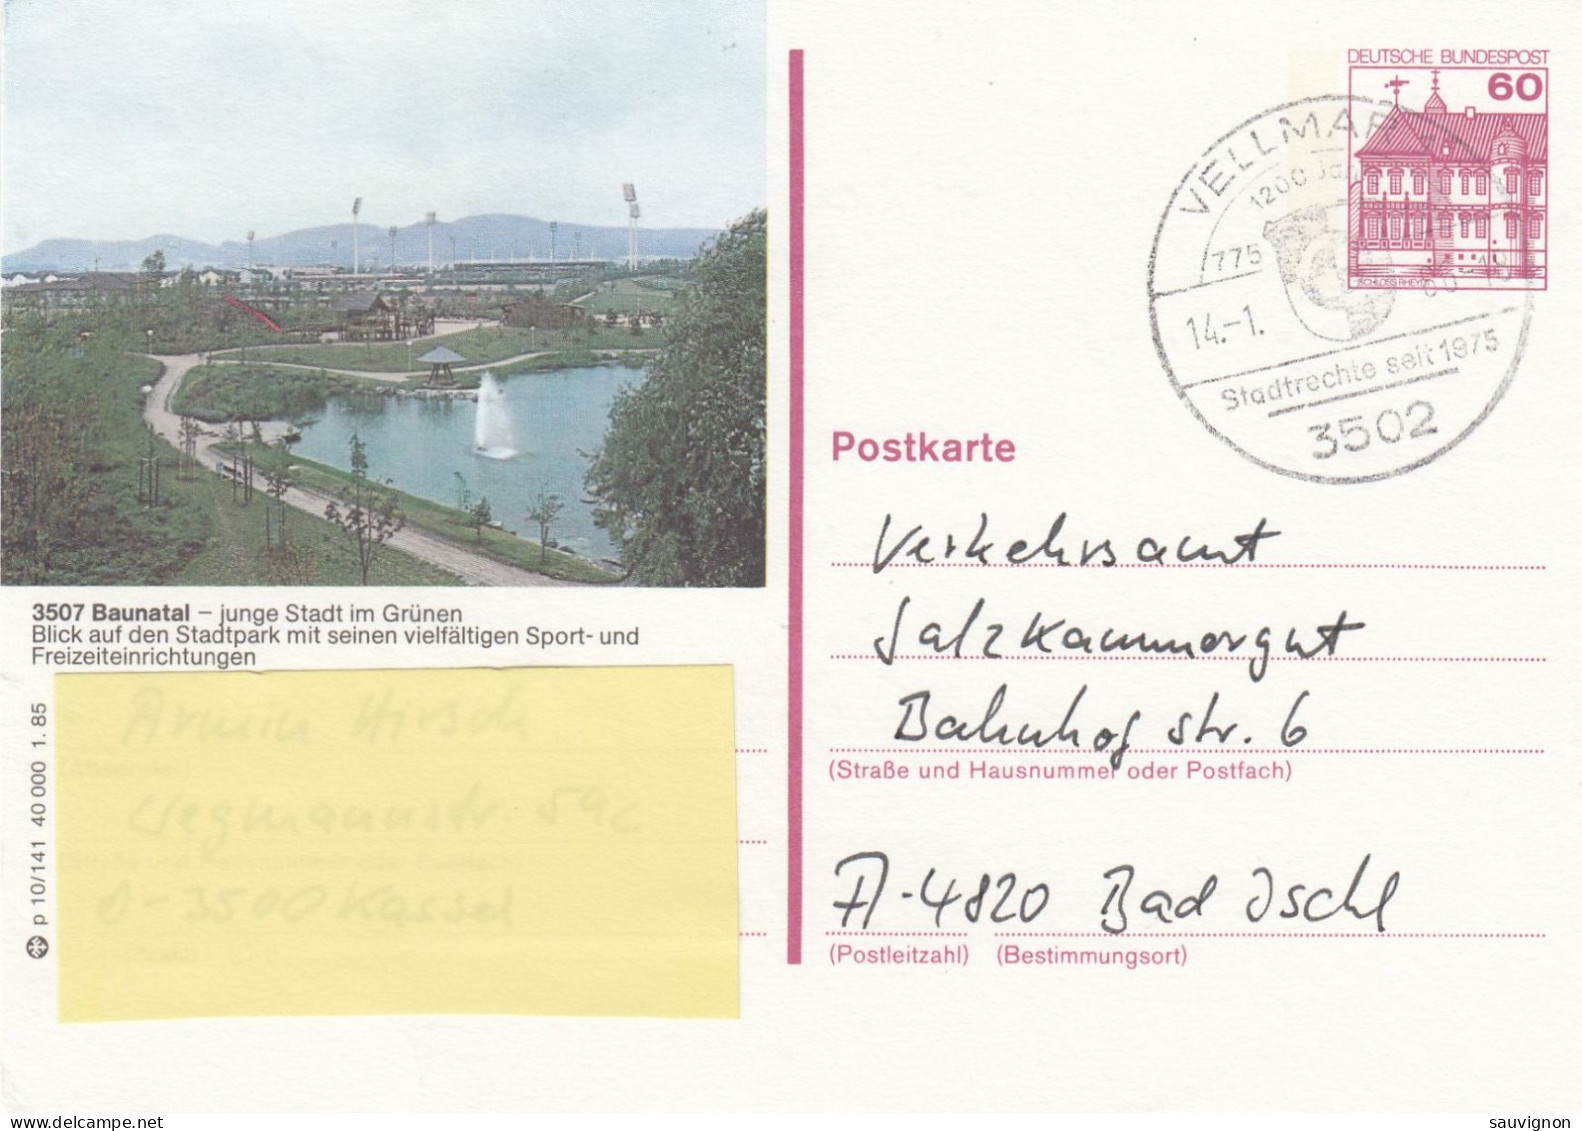 Deutschland. Bildpostkarte 3507 Baunatal - Stadt Im Grünen, Wertstempel 60 Pfg. Burgen Und Schlösser, Serie "p" - Illustrated Postcards - Used